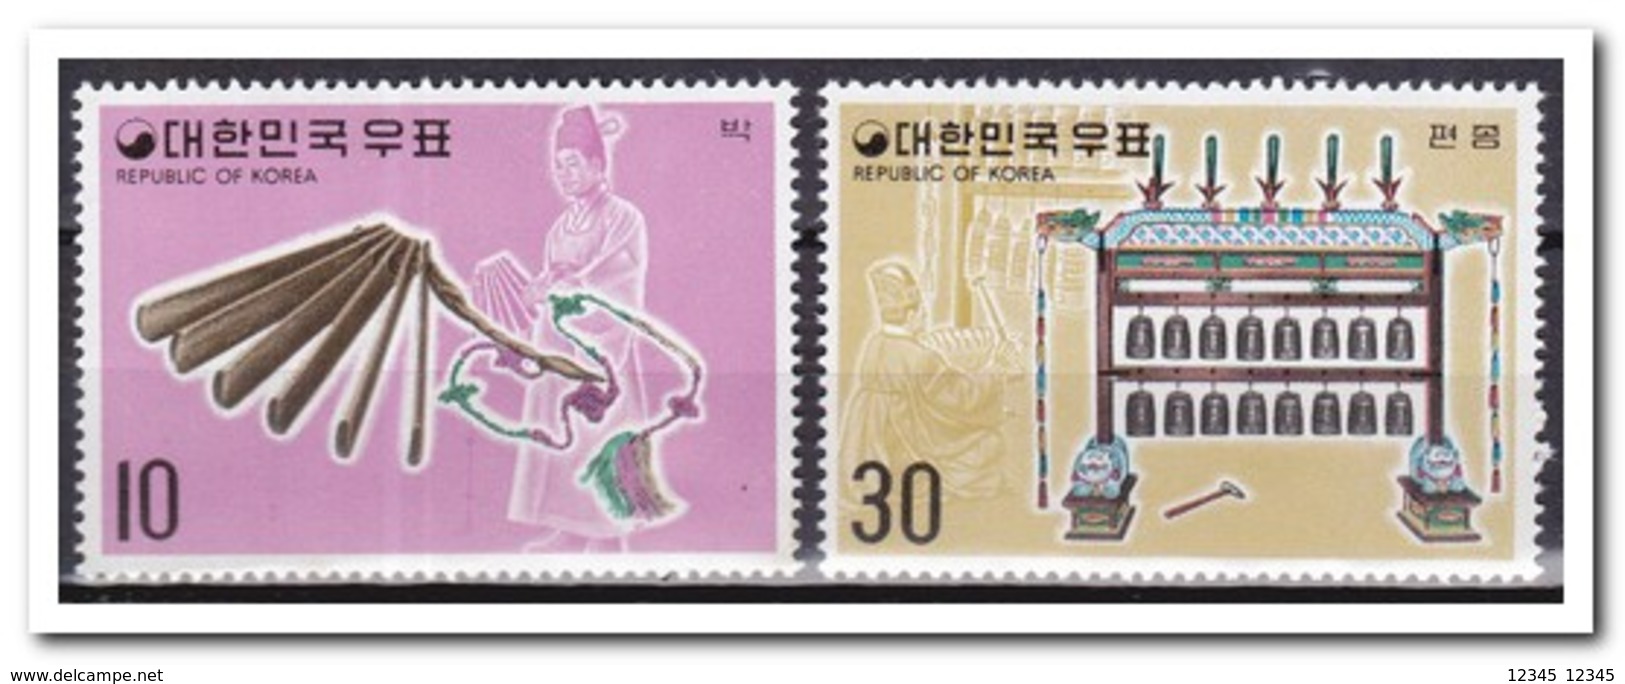 Zuid Korea 1974, Postfris MNH, Music Instruments - Corea Del Sur